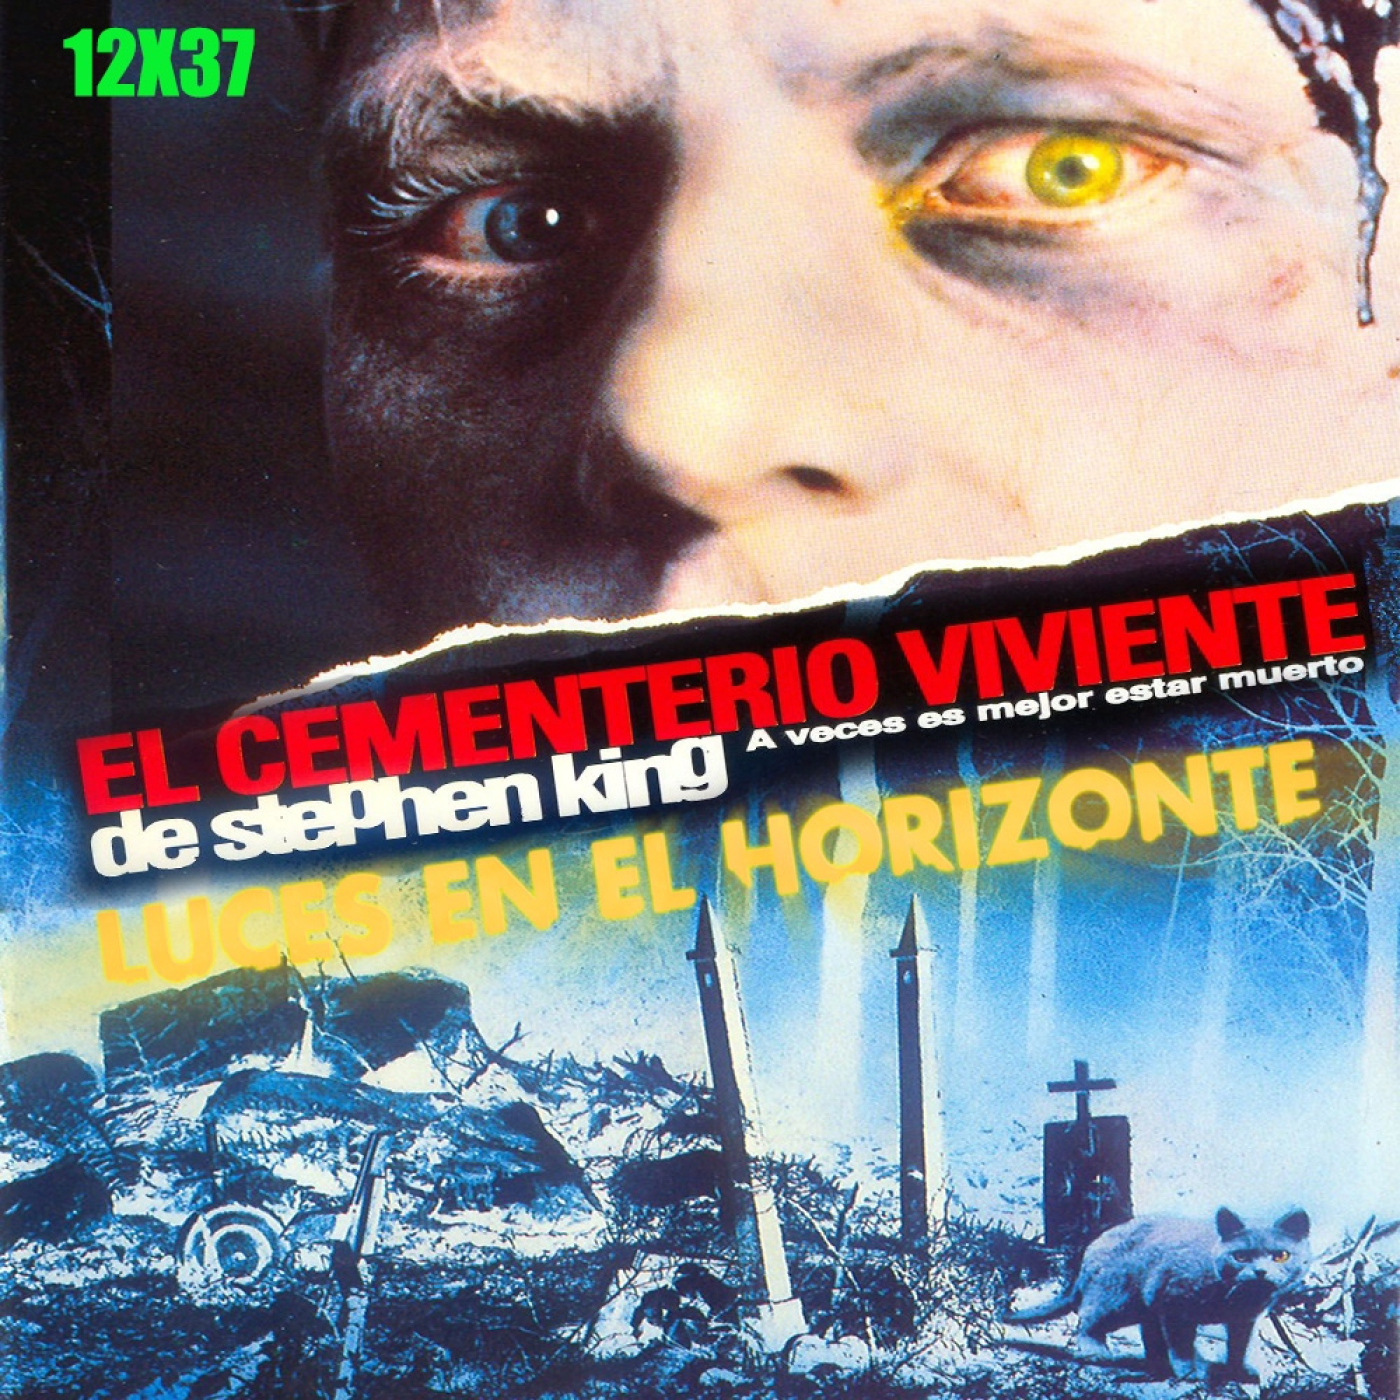 Cementerio Viviente [Pet Sematary] de Stephen King - Luces en el Horizonte 12X37 - Episodio exclusivo para mecenas